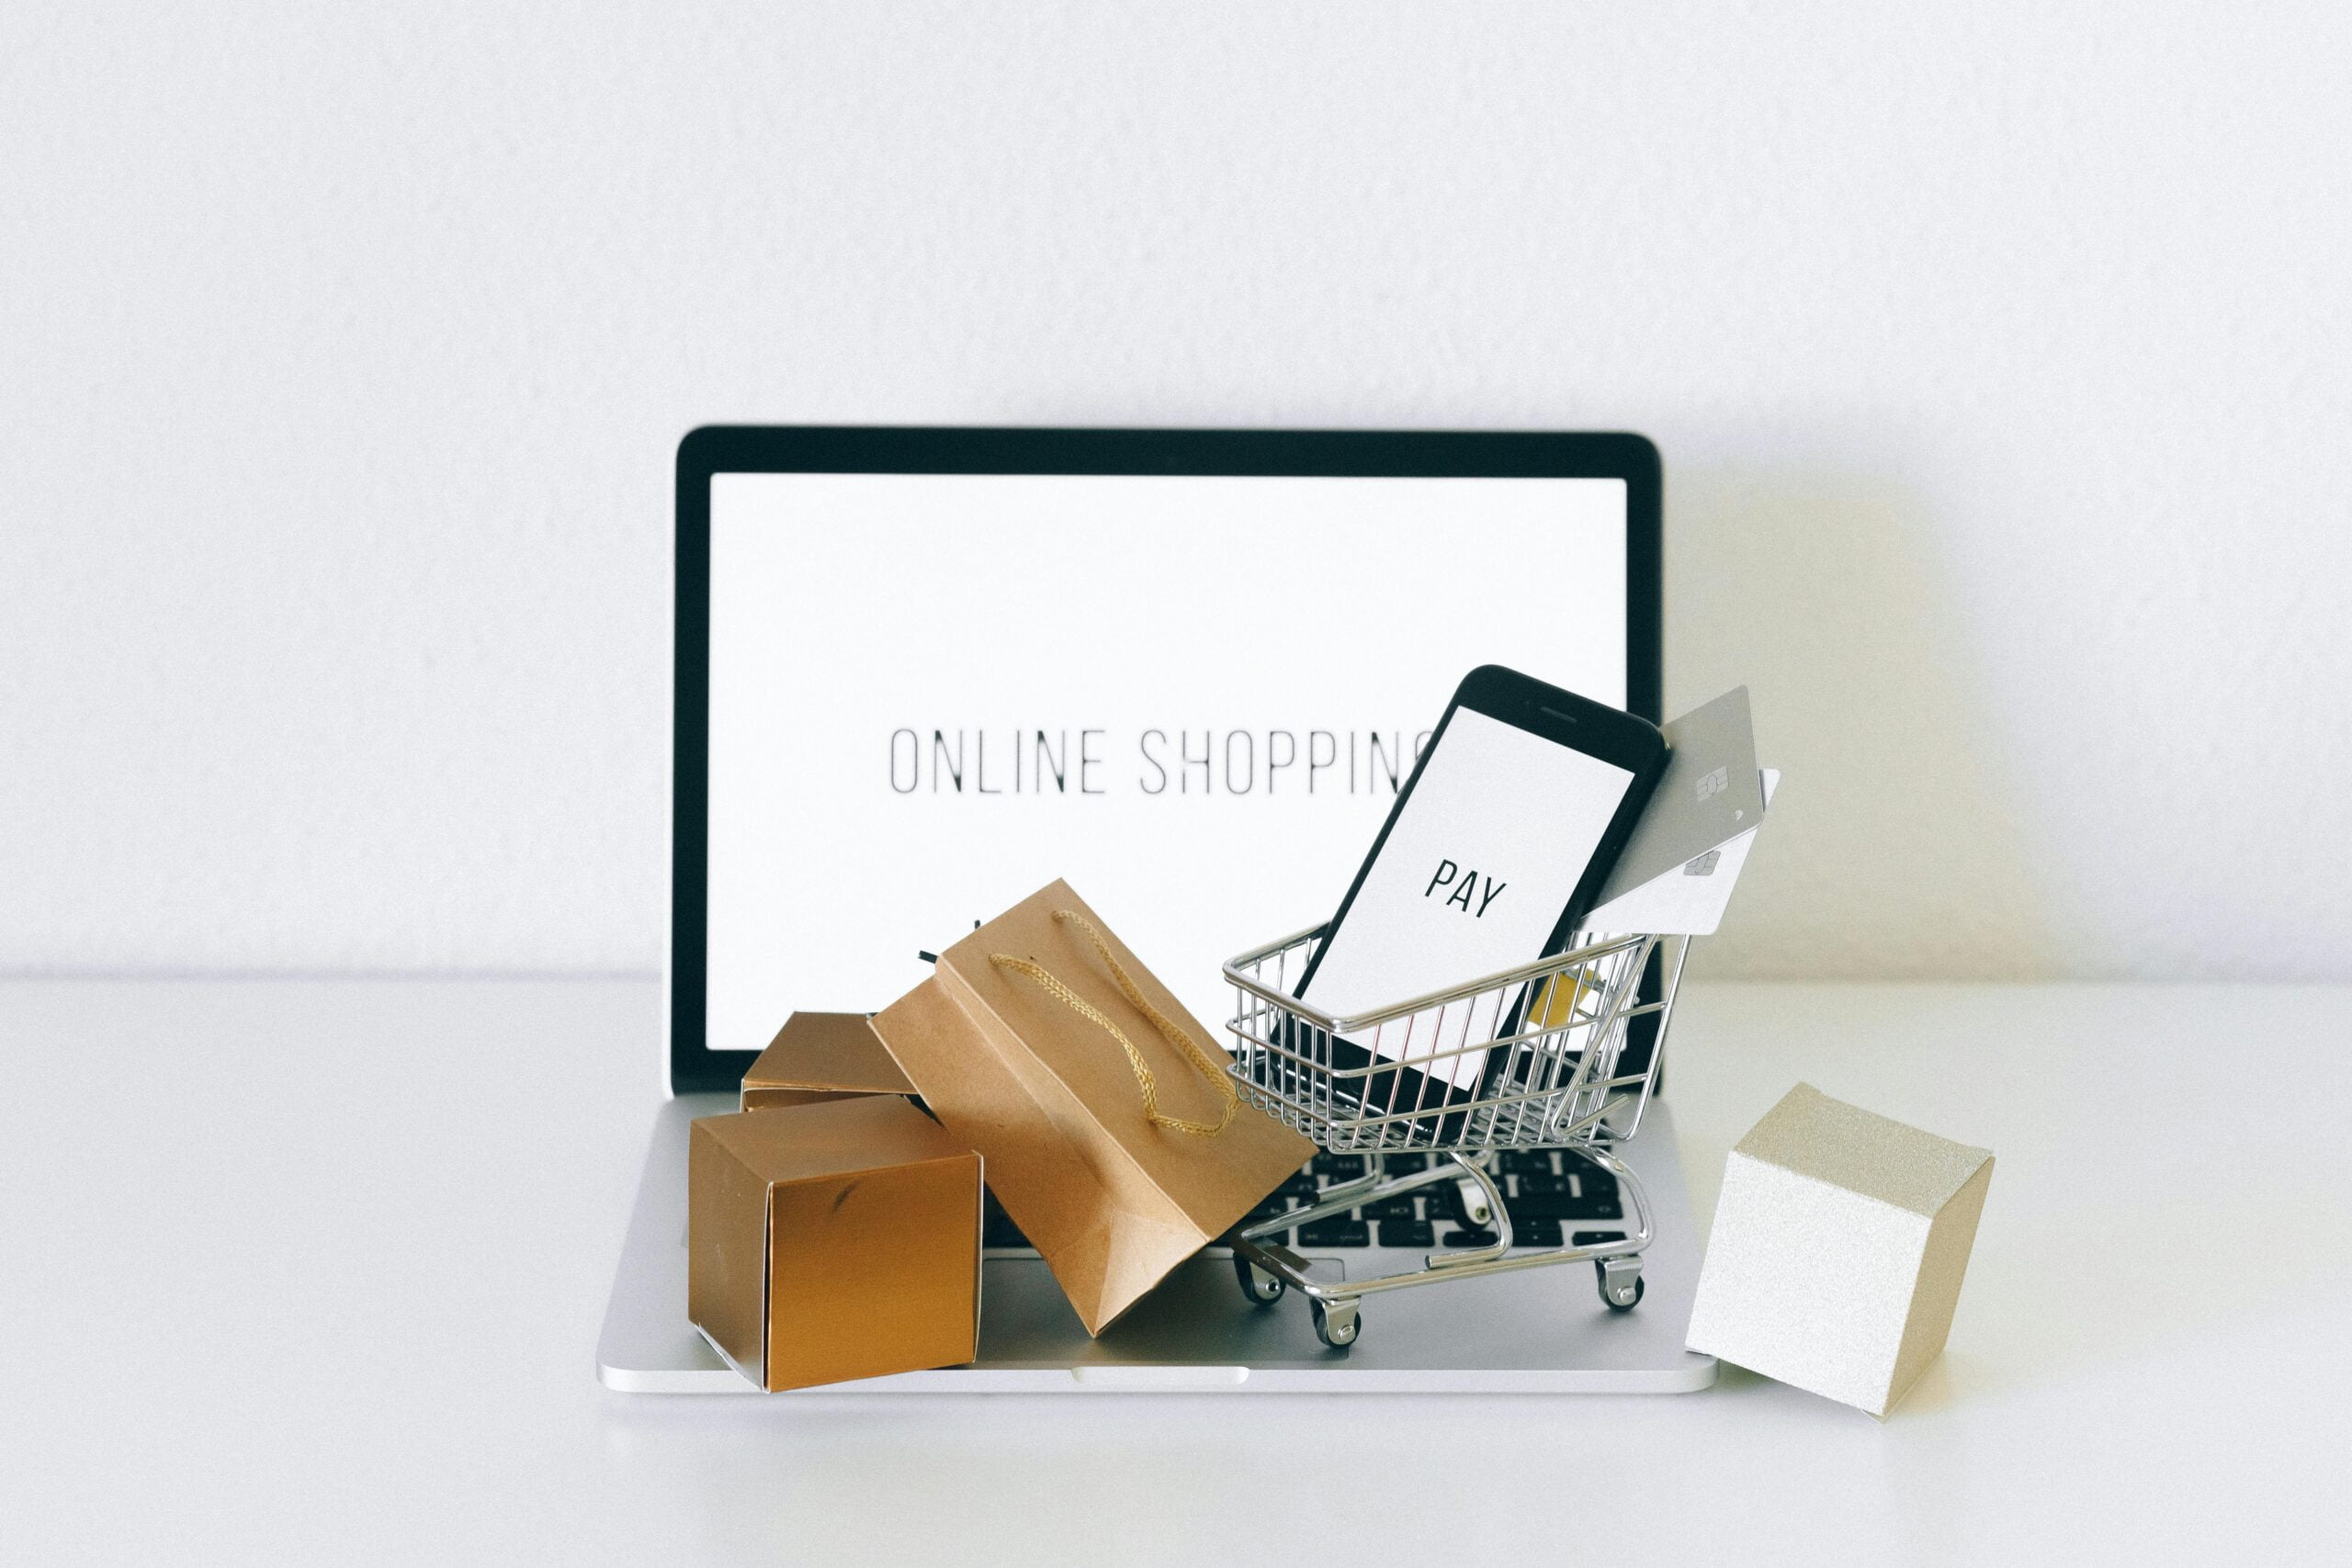 Kompozycja przedstawiająca koncept zakupów online z tabletem wyświetlającym napis "ONLINE SHOPPING", małym wózkiem na zakupy z telefonem komórkowym i kartami kredytowymi oraz kilkoma pudełkami na laptopie i obok, symbolizując zamówienia internetowe.